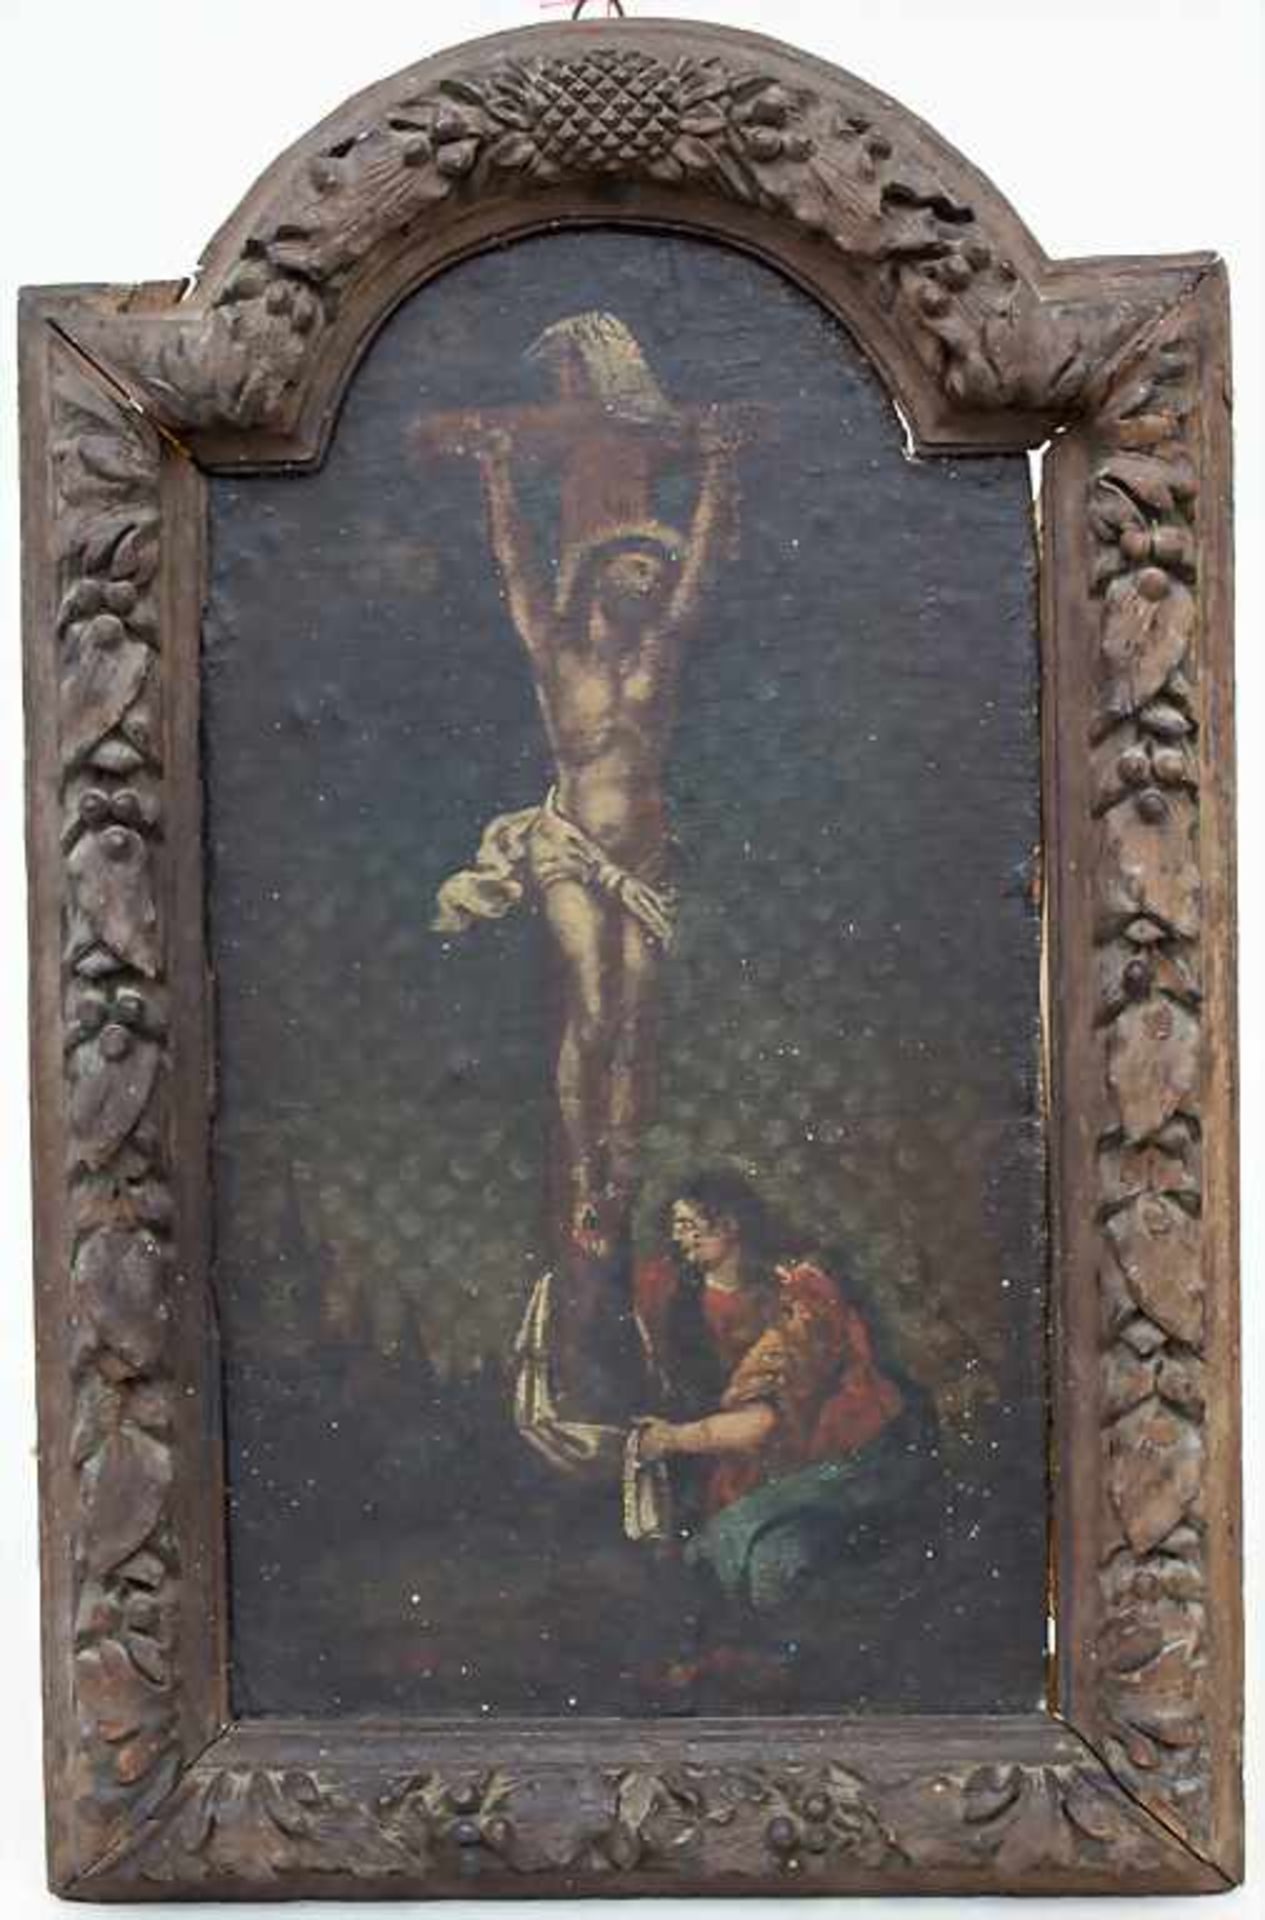 Künstler des 18. Jh., 'Kreuzigungsszene' / 'A crucifixion scene'Technik: Öl auf Leinwand (auf Holz